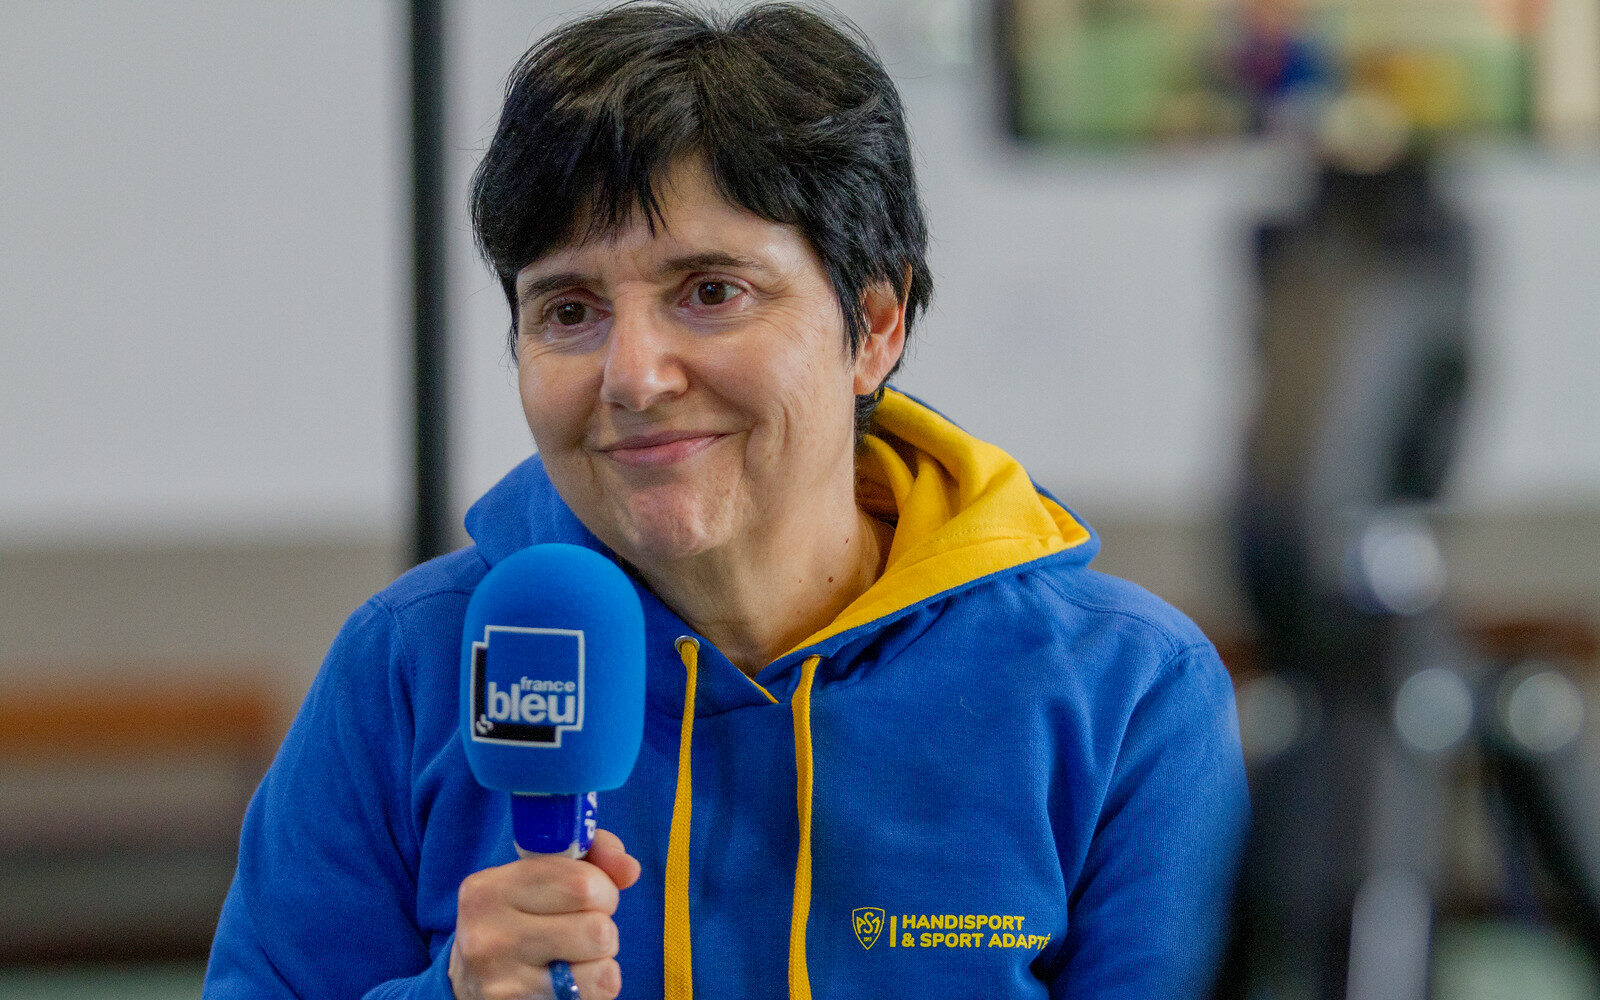 Muriel Souzais, secrétaire de la section Handisport & Sport Adapté, dans la série de podcasts « l’ASM en mouvement »